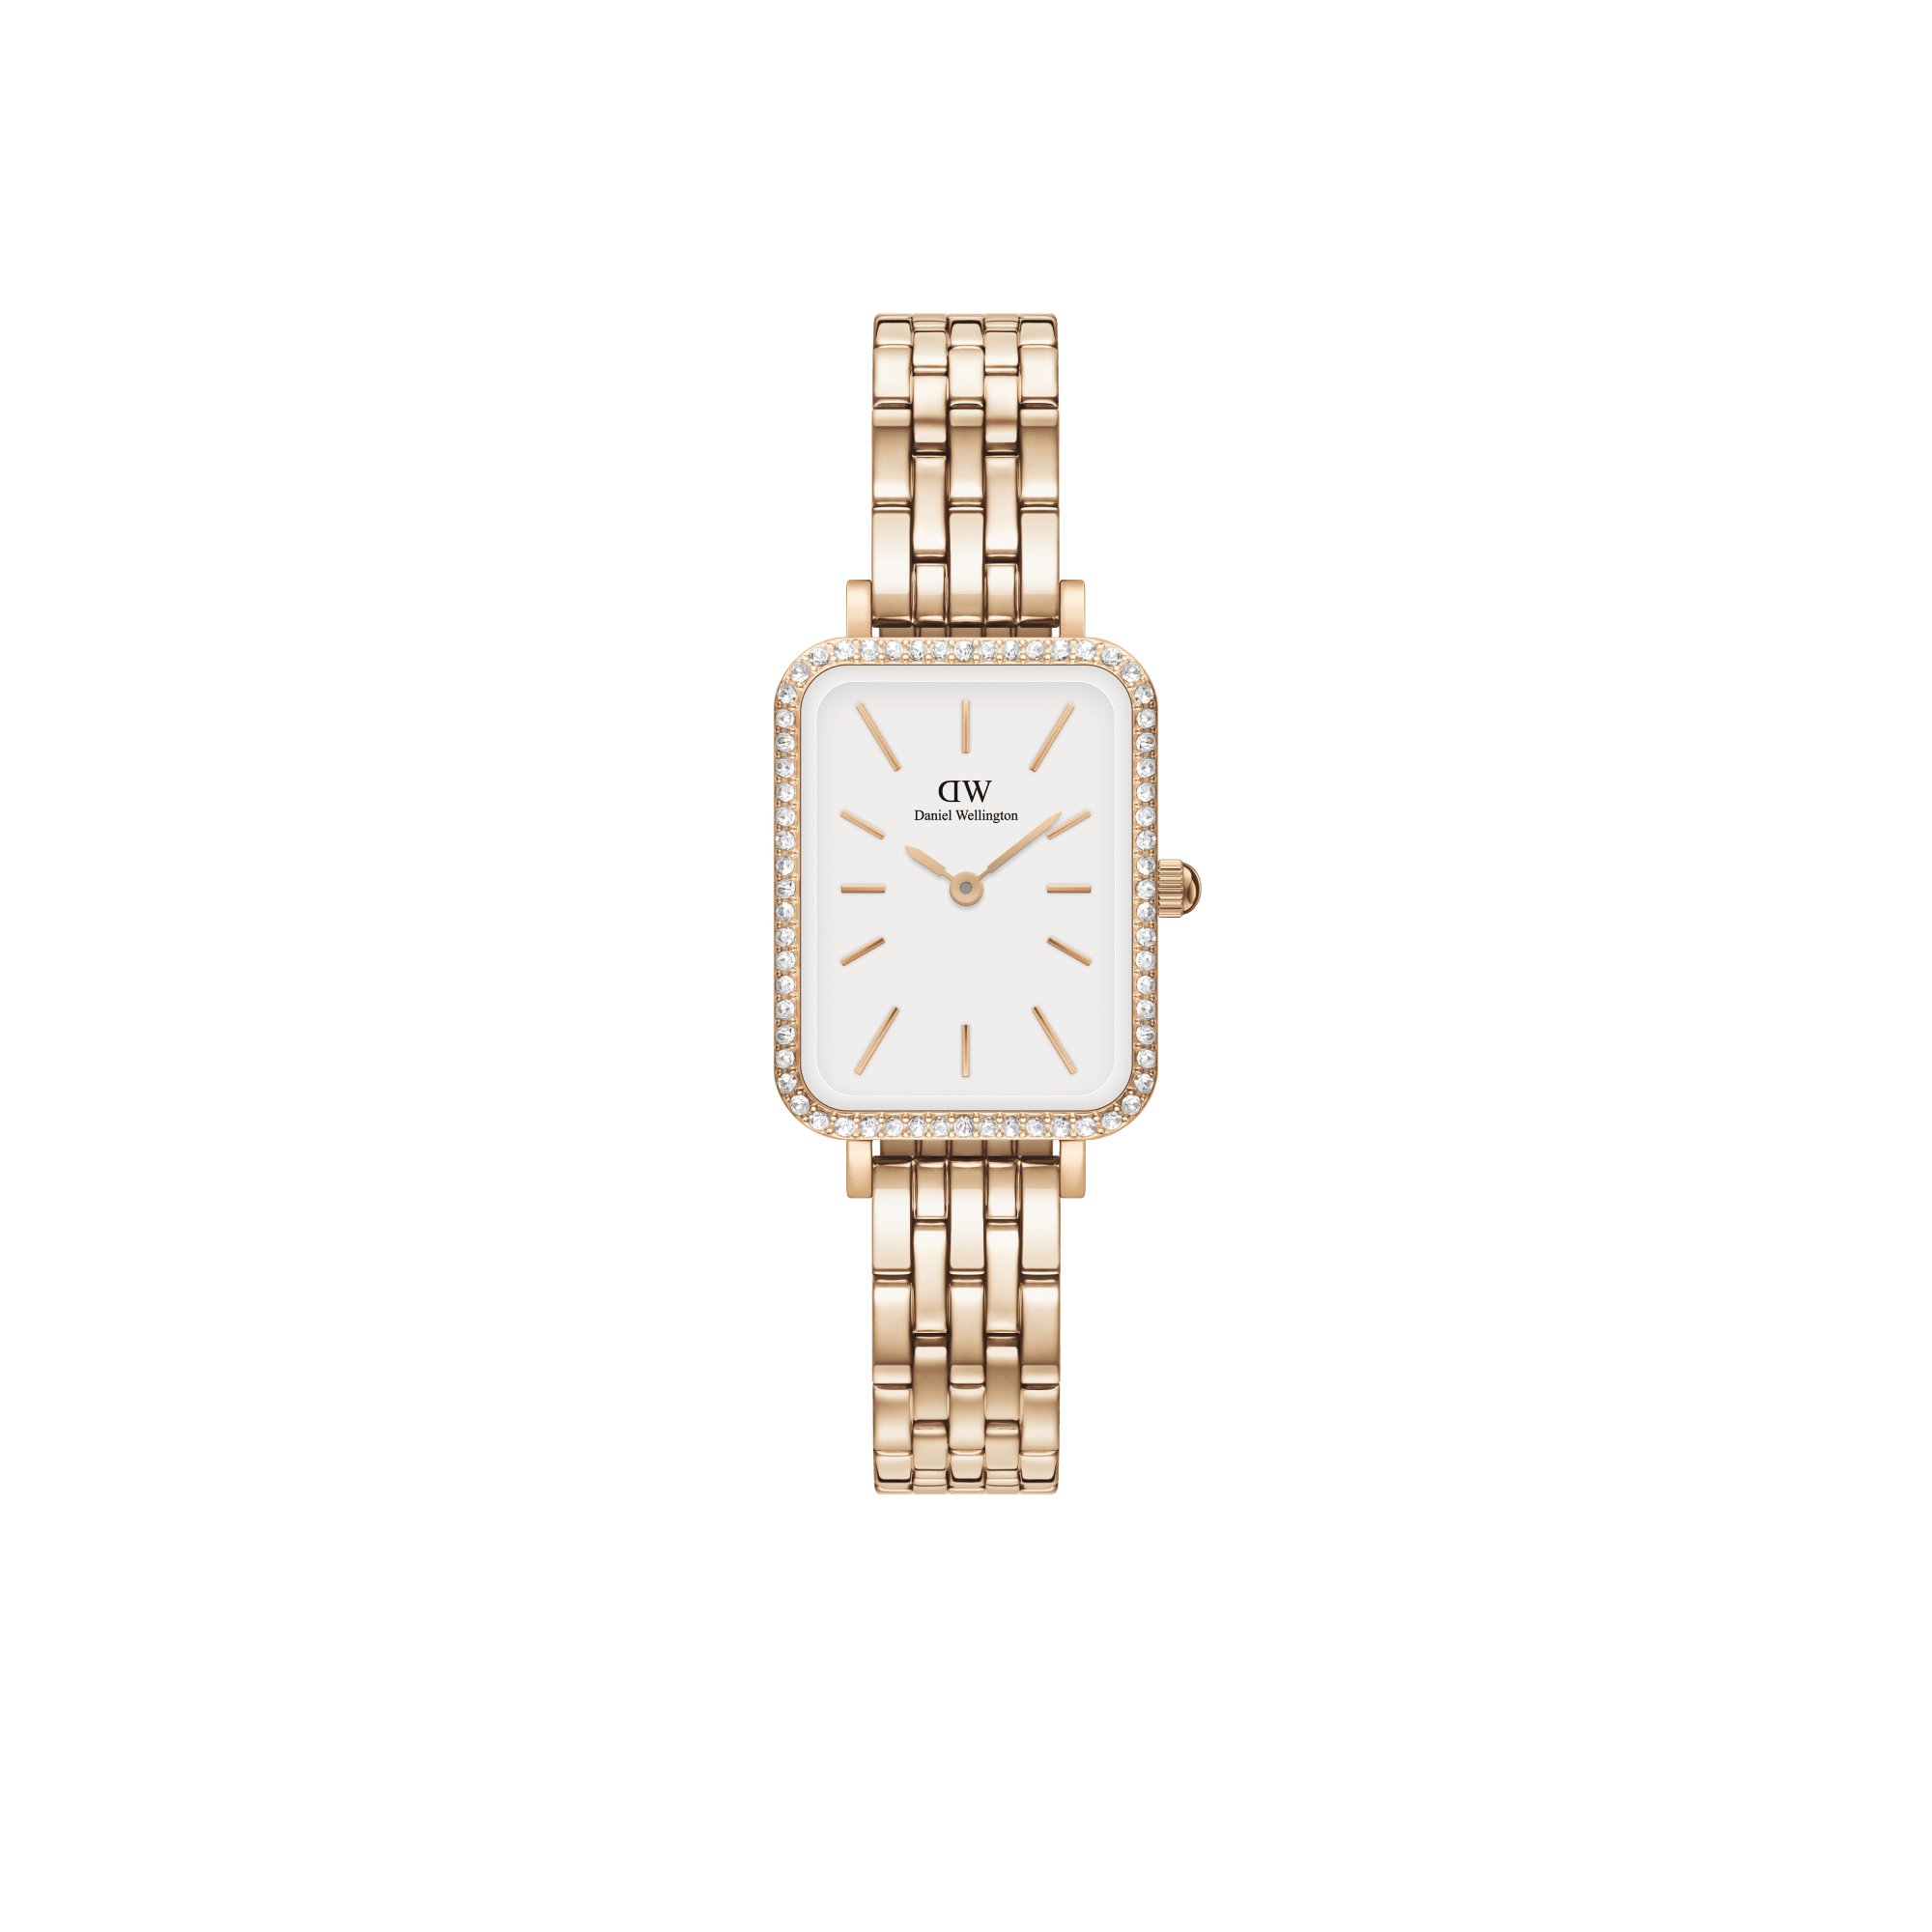 腕時計 - DW の高級腕時計 - ダニエルウェリントンの時計ラインナップ全コレクション | DW – ページ5